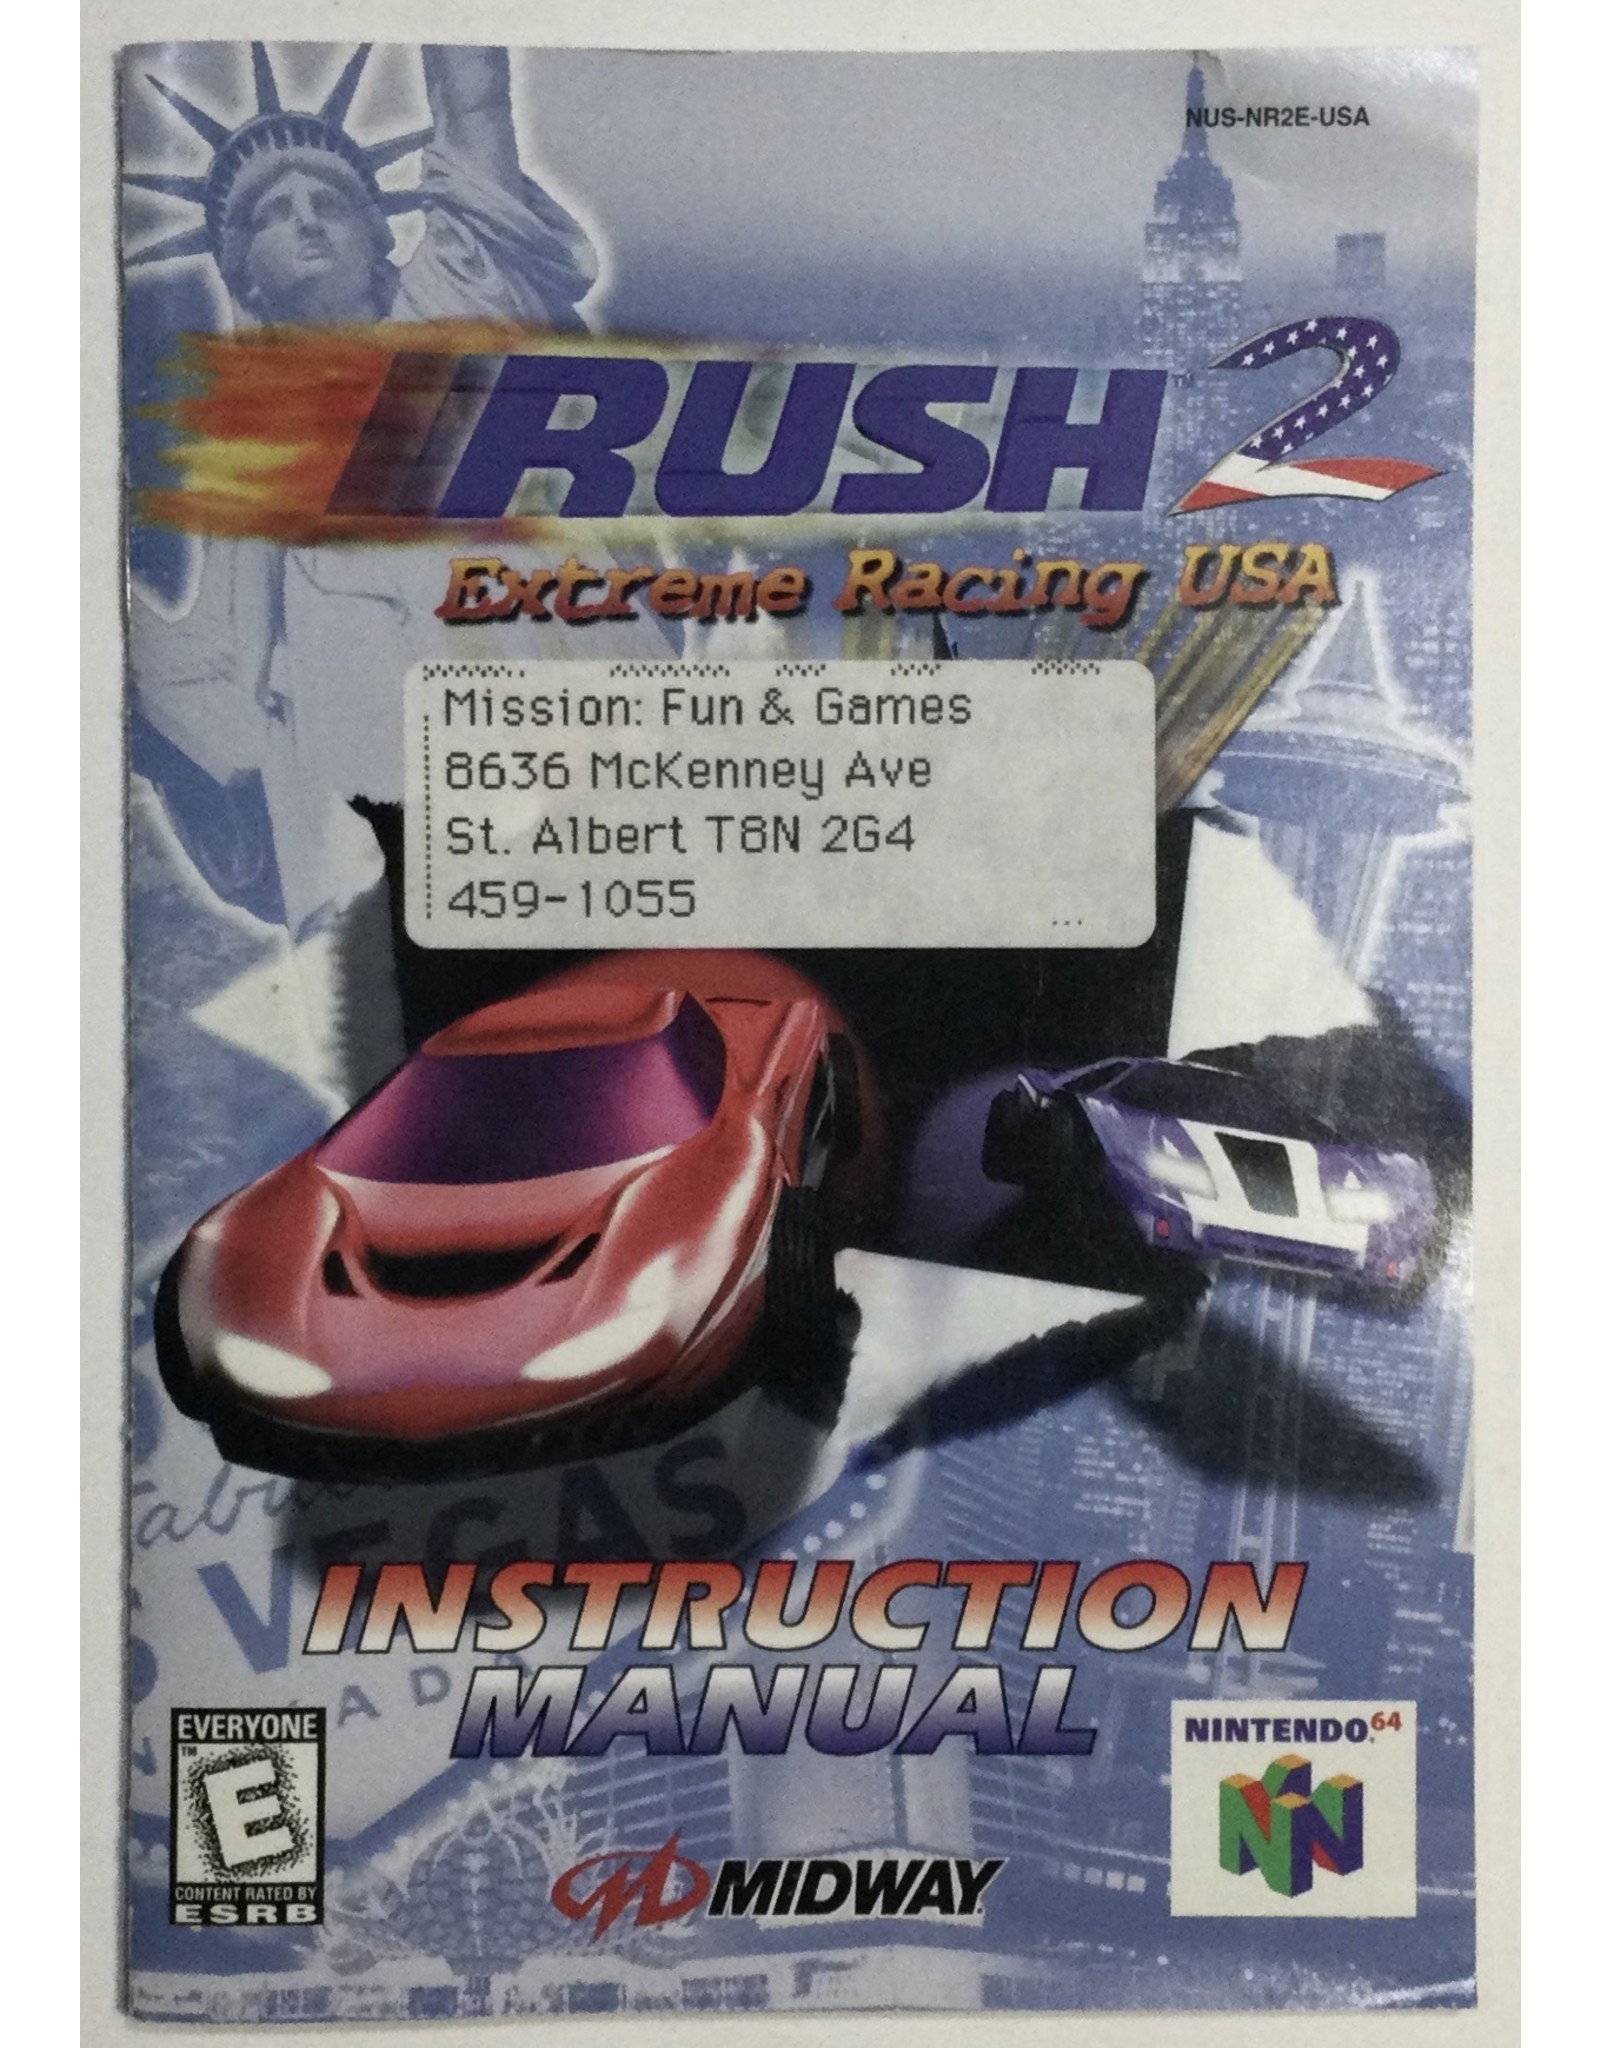 MIDWAY Rush 2 Extreme Racing USA for Nintendo 64 (N64) - CIB